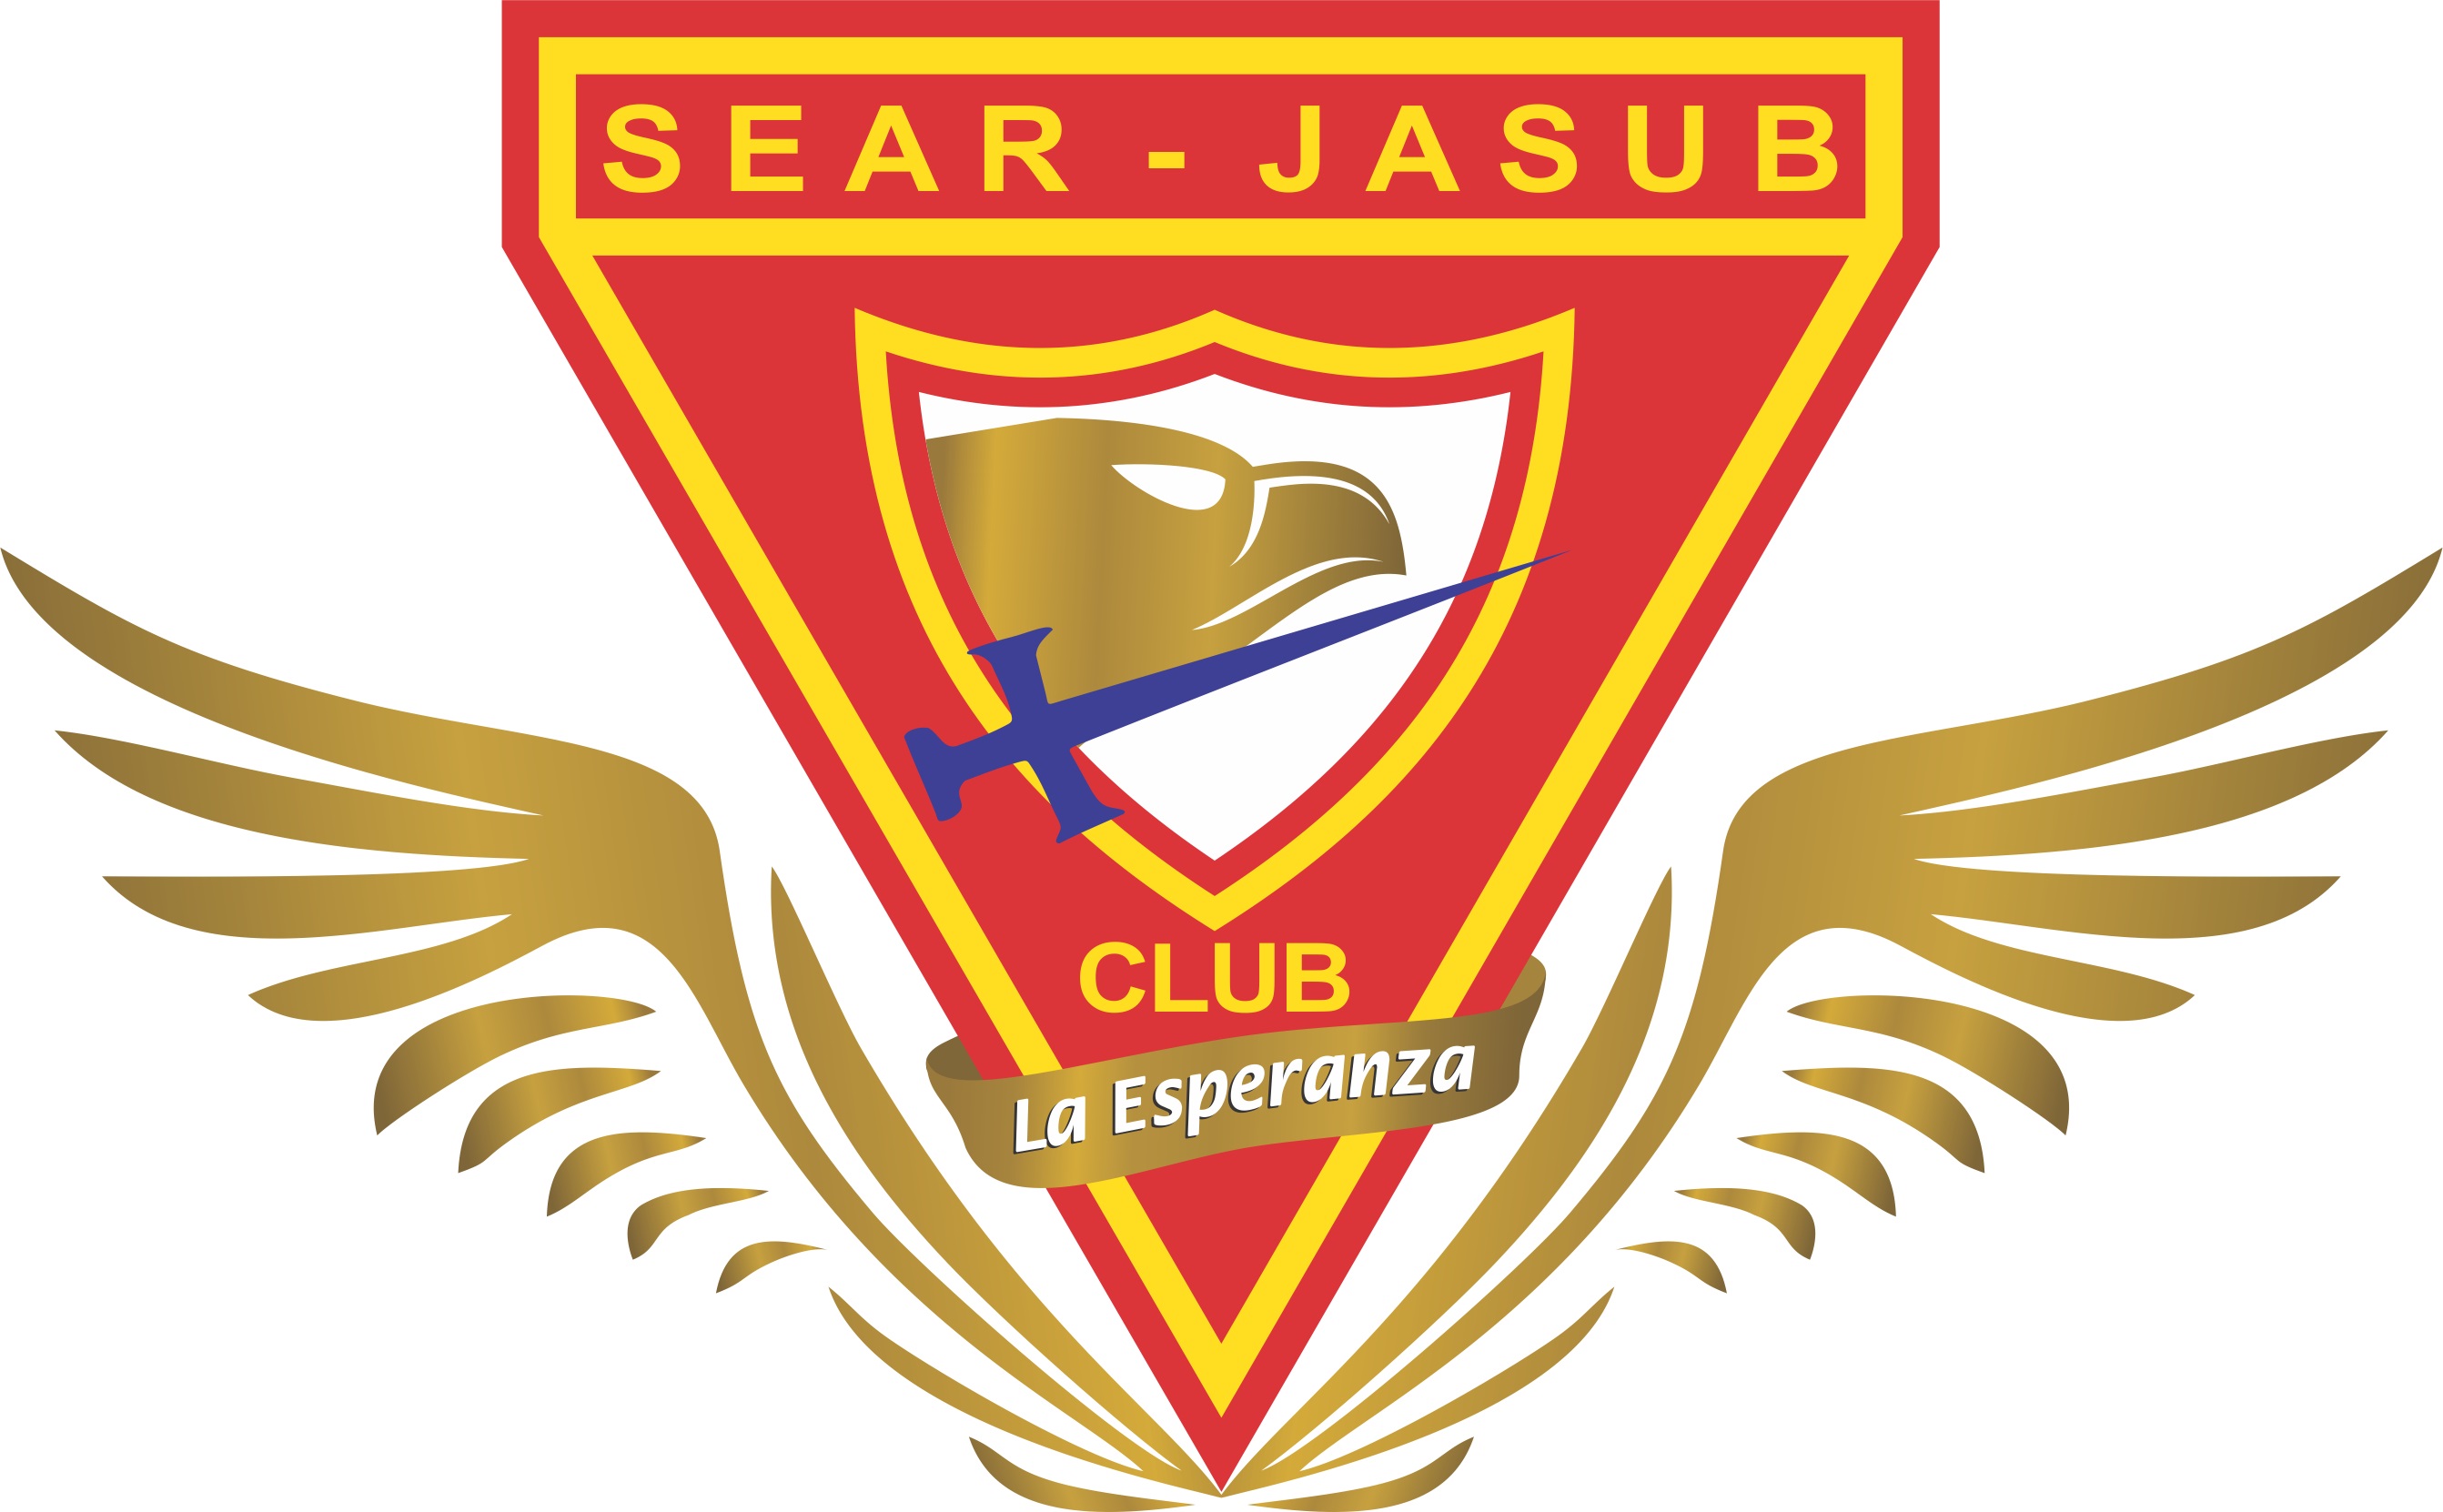 Sear Jasub - Chimb C